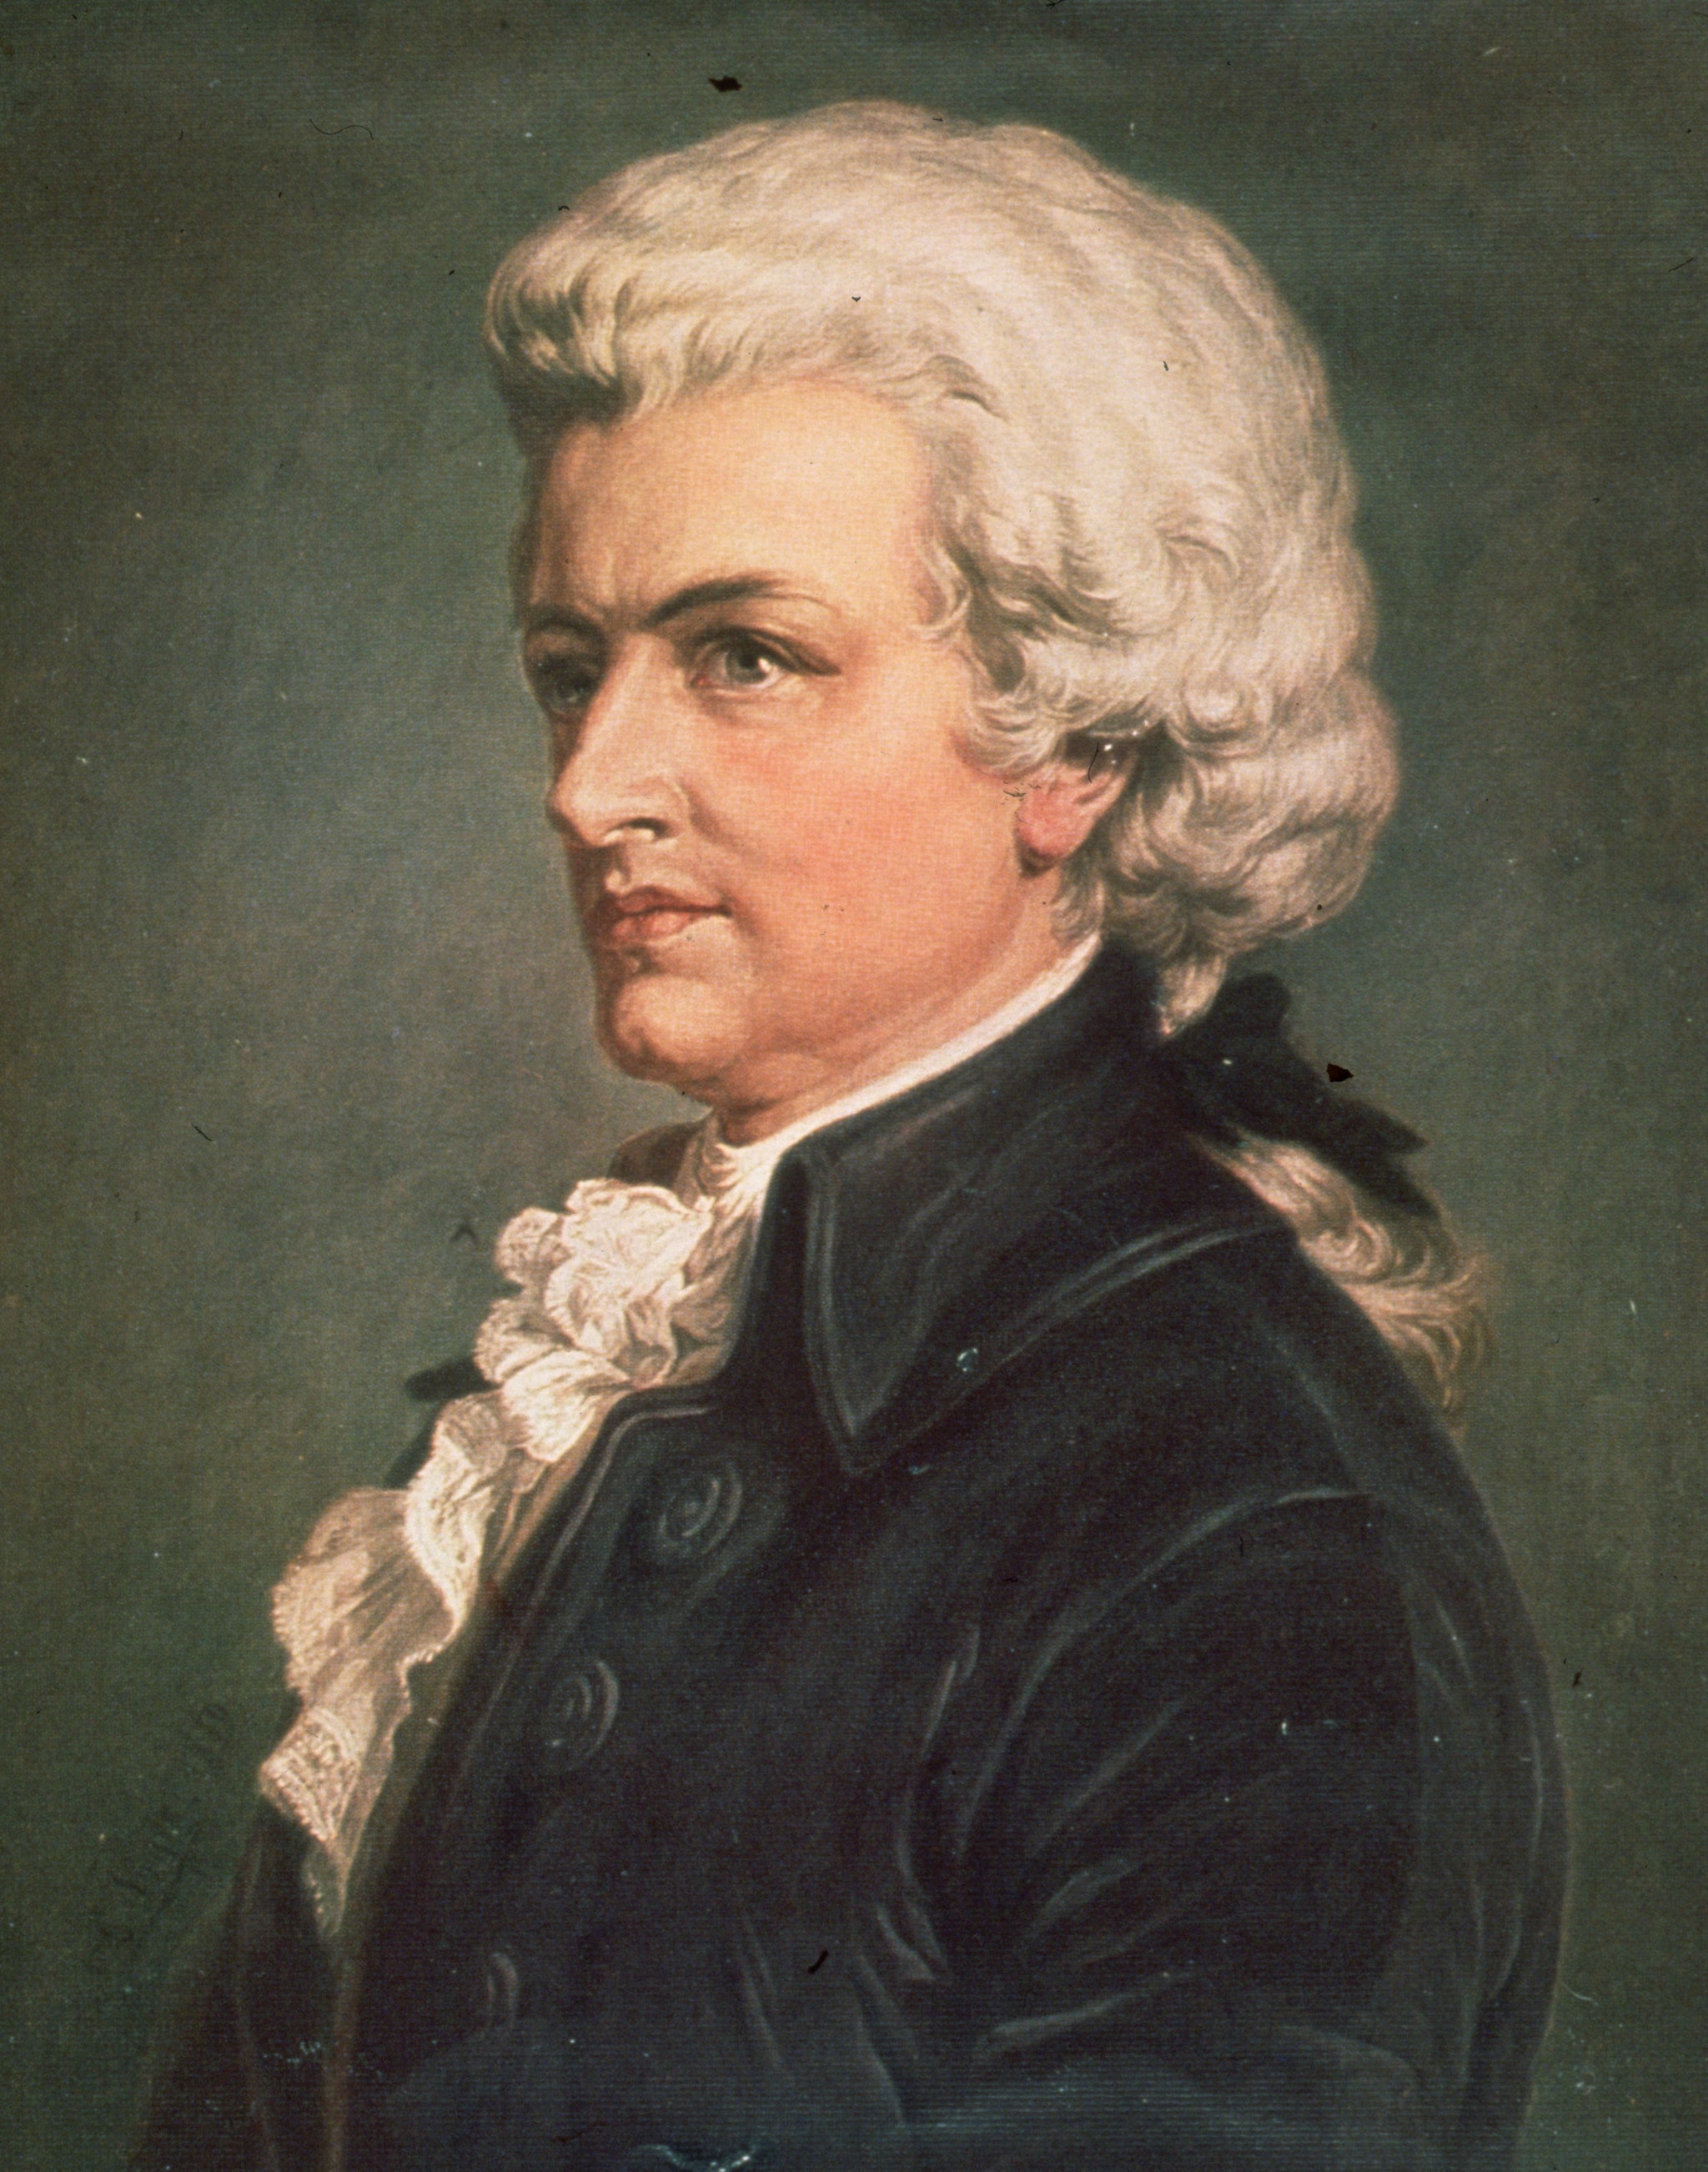 Se sabe que la sonata “K448” de Mozart reduce la frecuencia de las convulsiones en personas con epilepsia